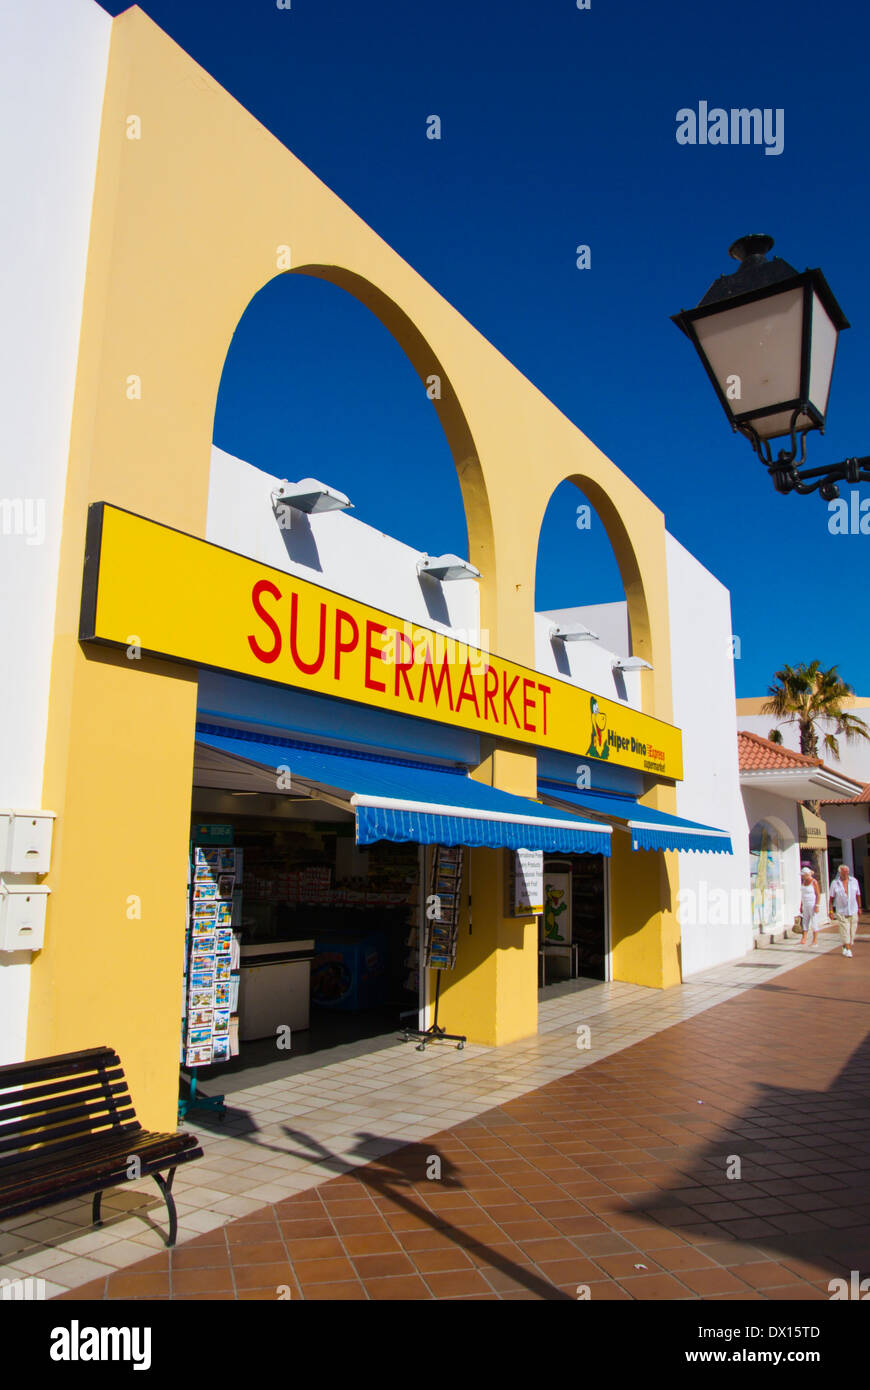 Supermercado Hiperdino exterior, Caleta de Fuste, Fuerteventura, Islas Canarias, España, Europa Foto de stock